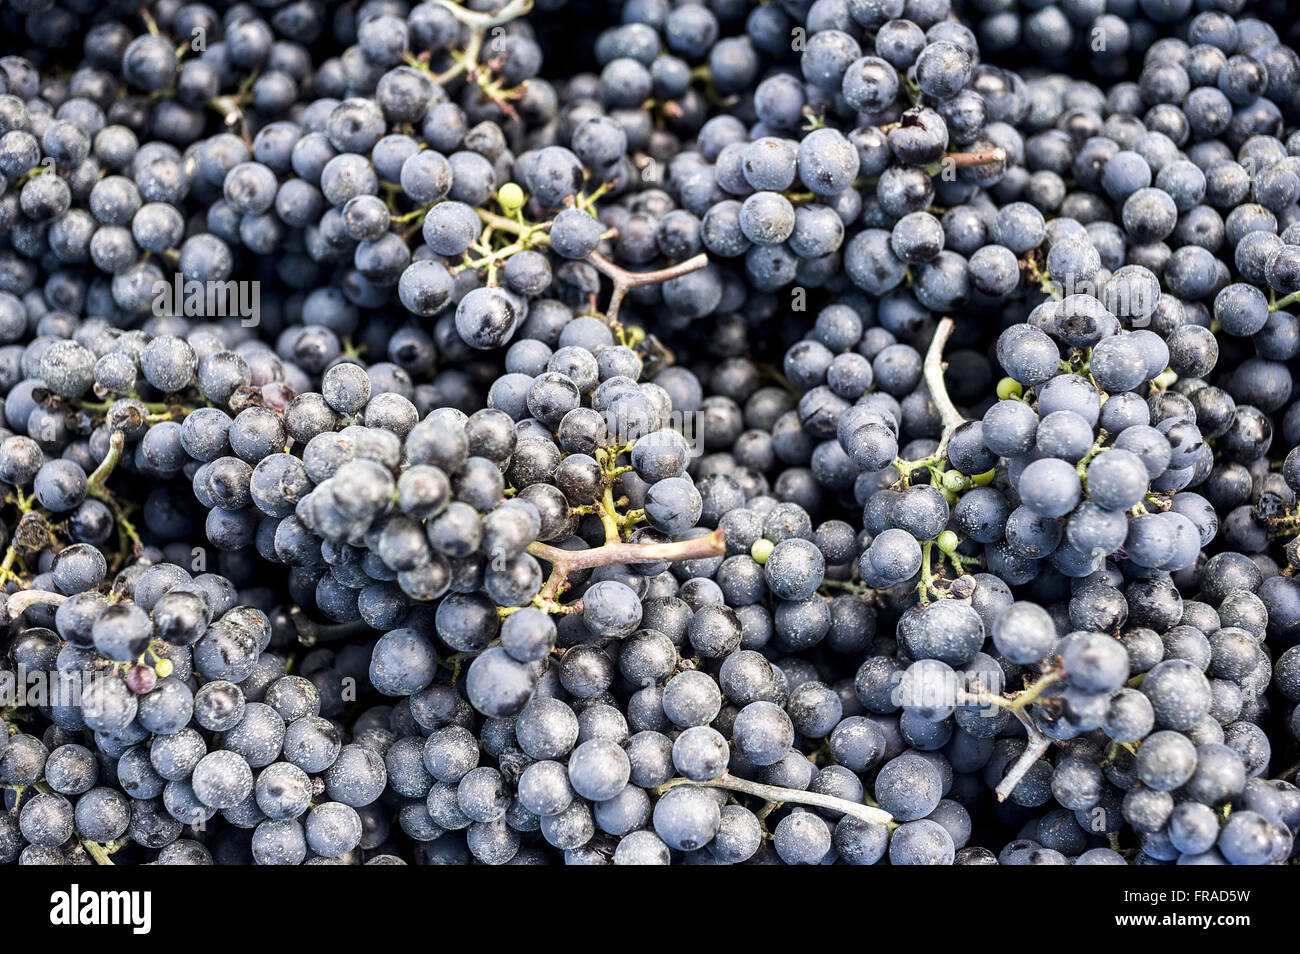 Dettaglio di uva Merlot del tipo per la produzione di vino Foto Stock